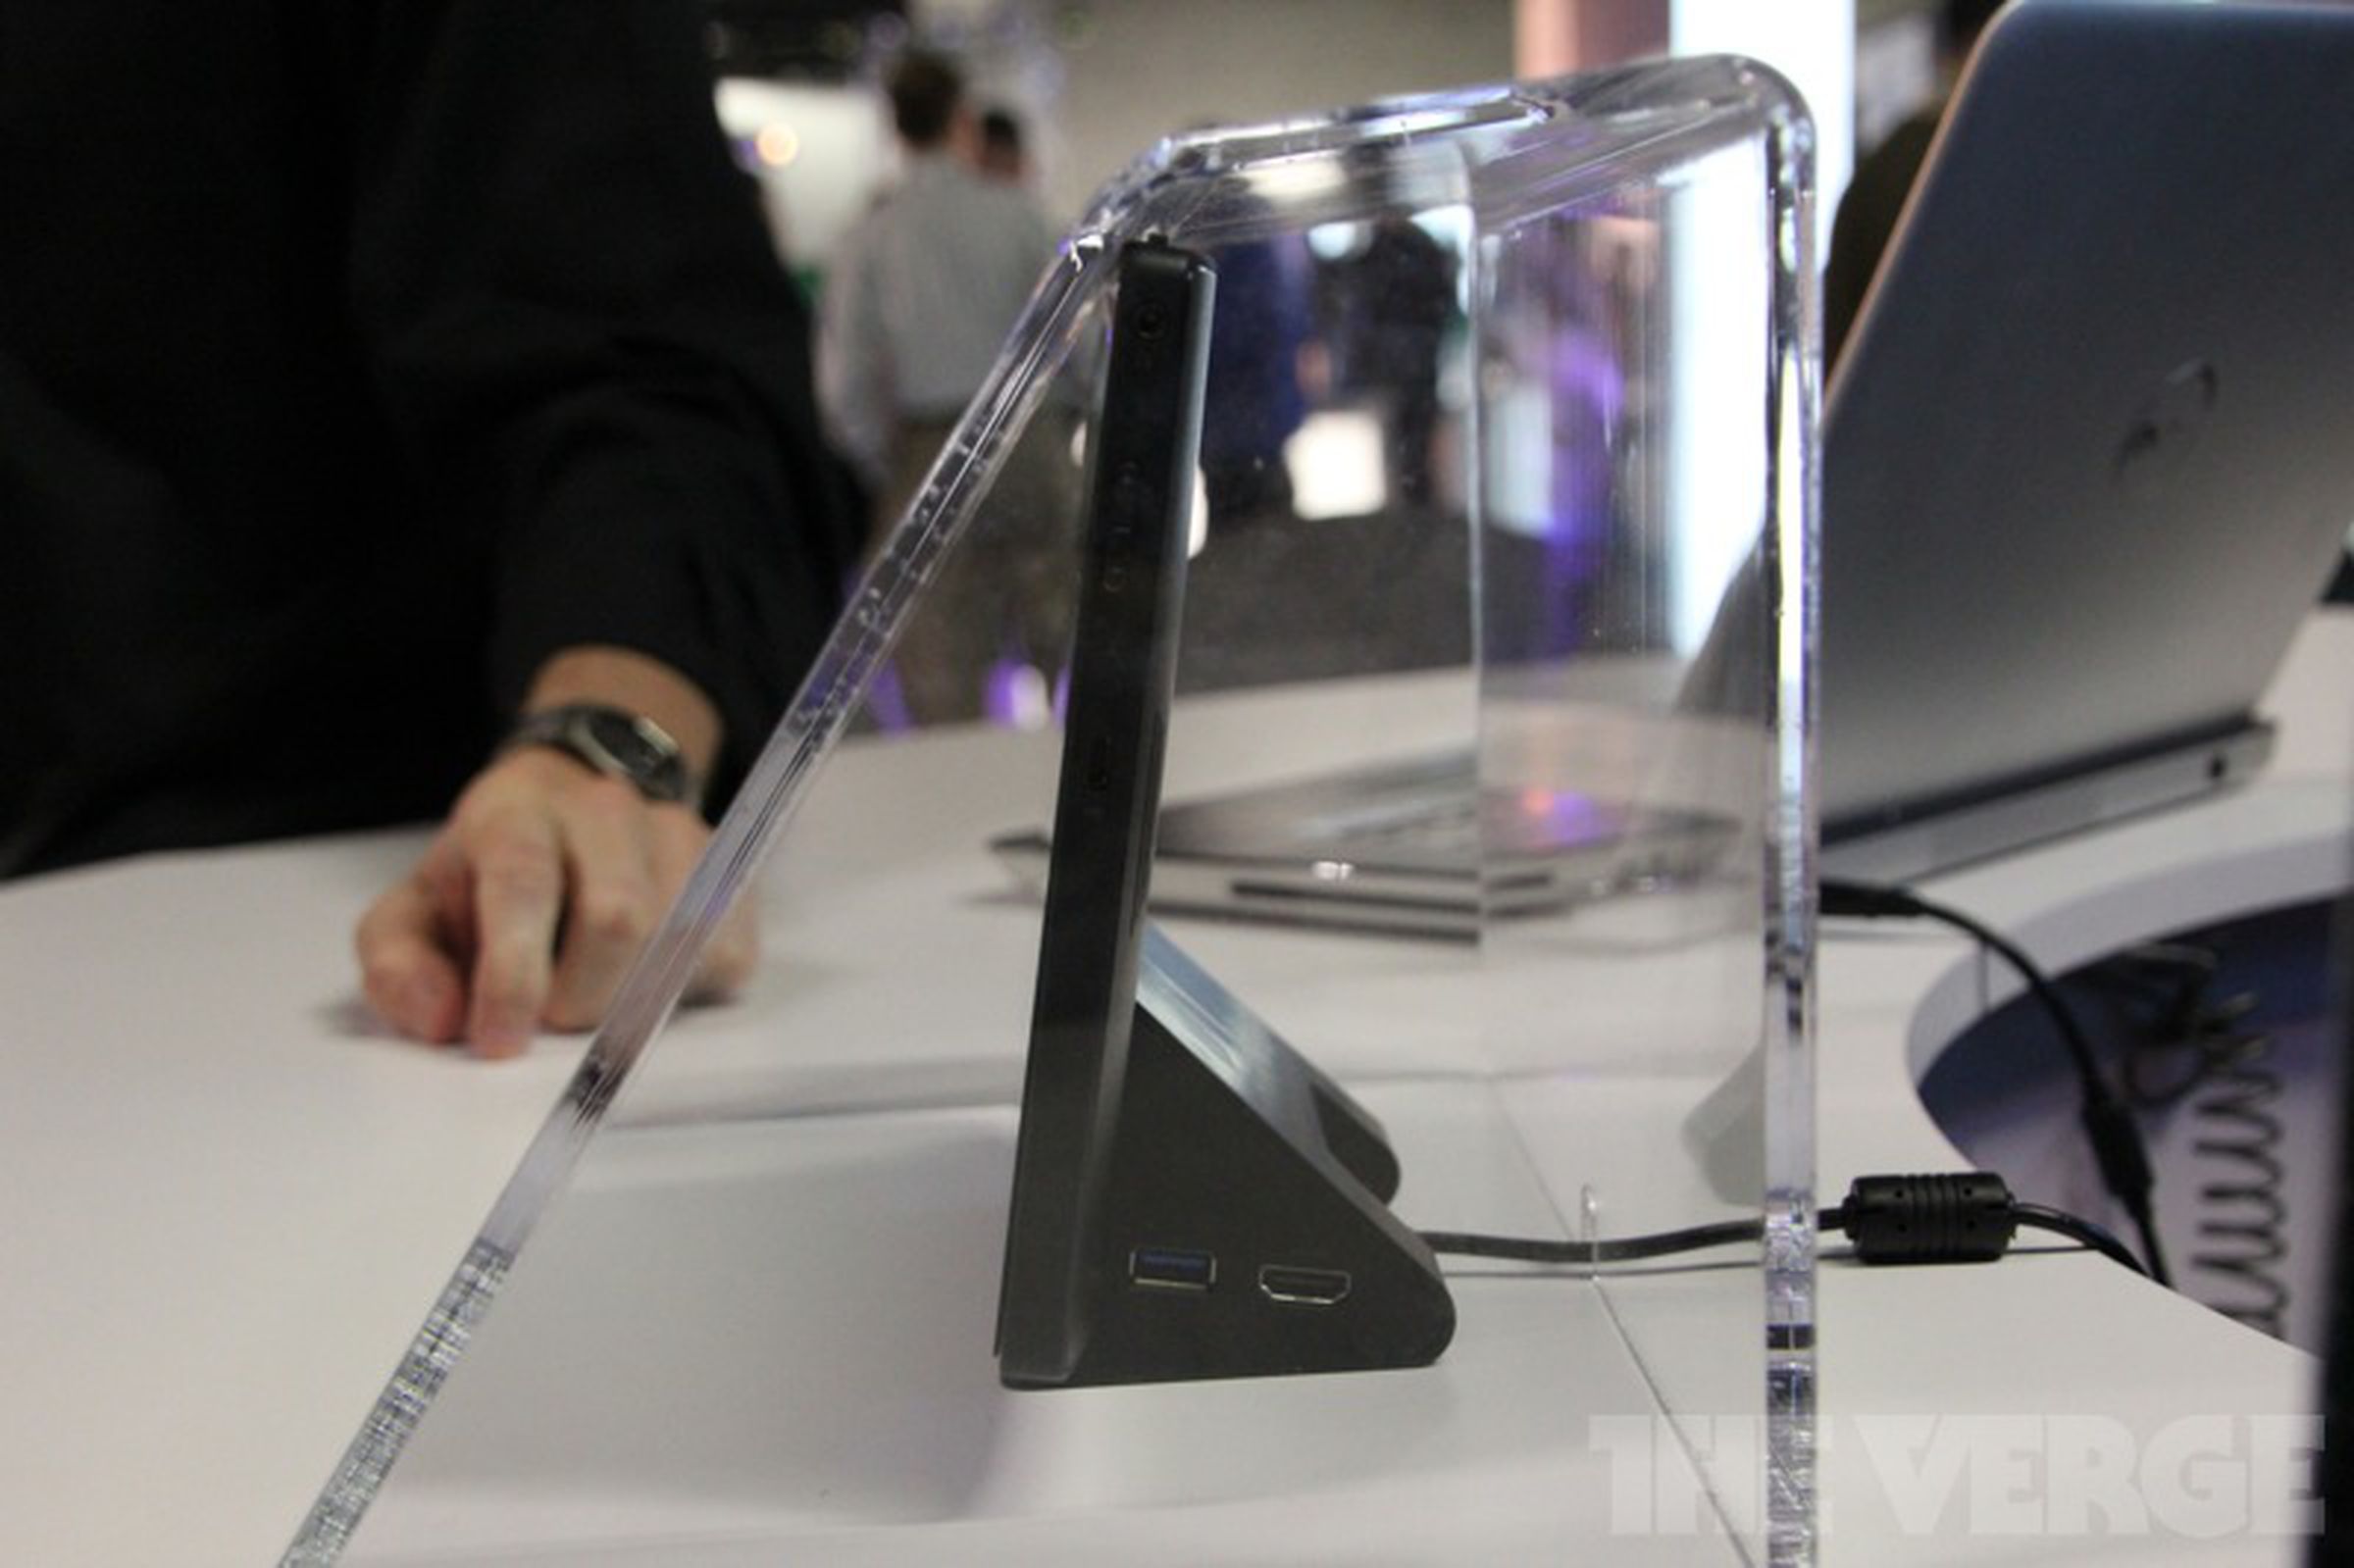 Nvidia Kal-El reference design tablet hands-on photos